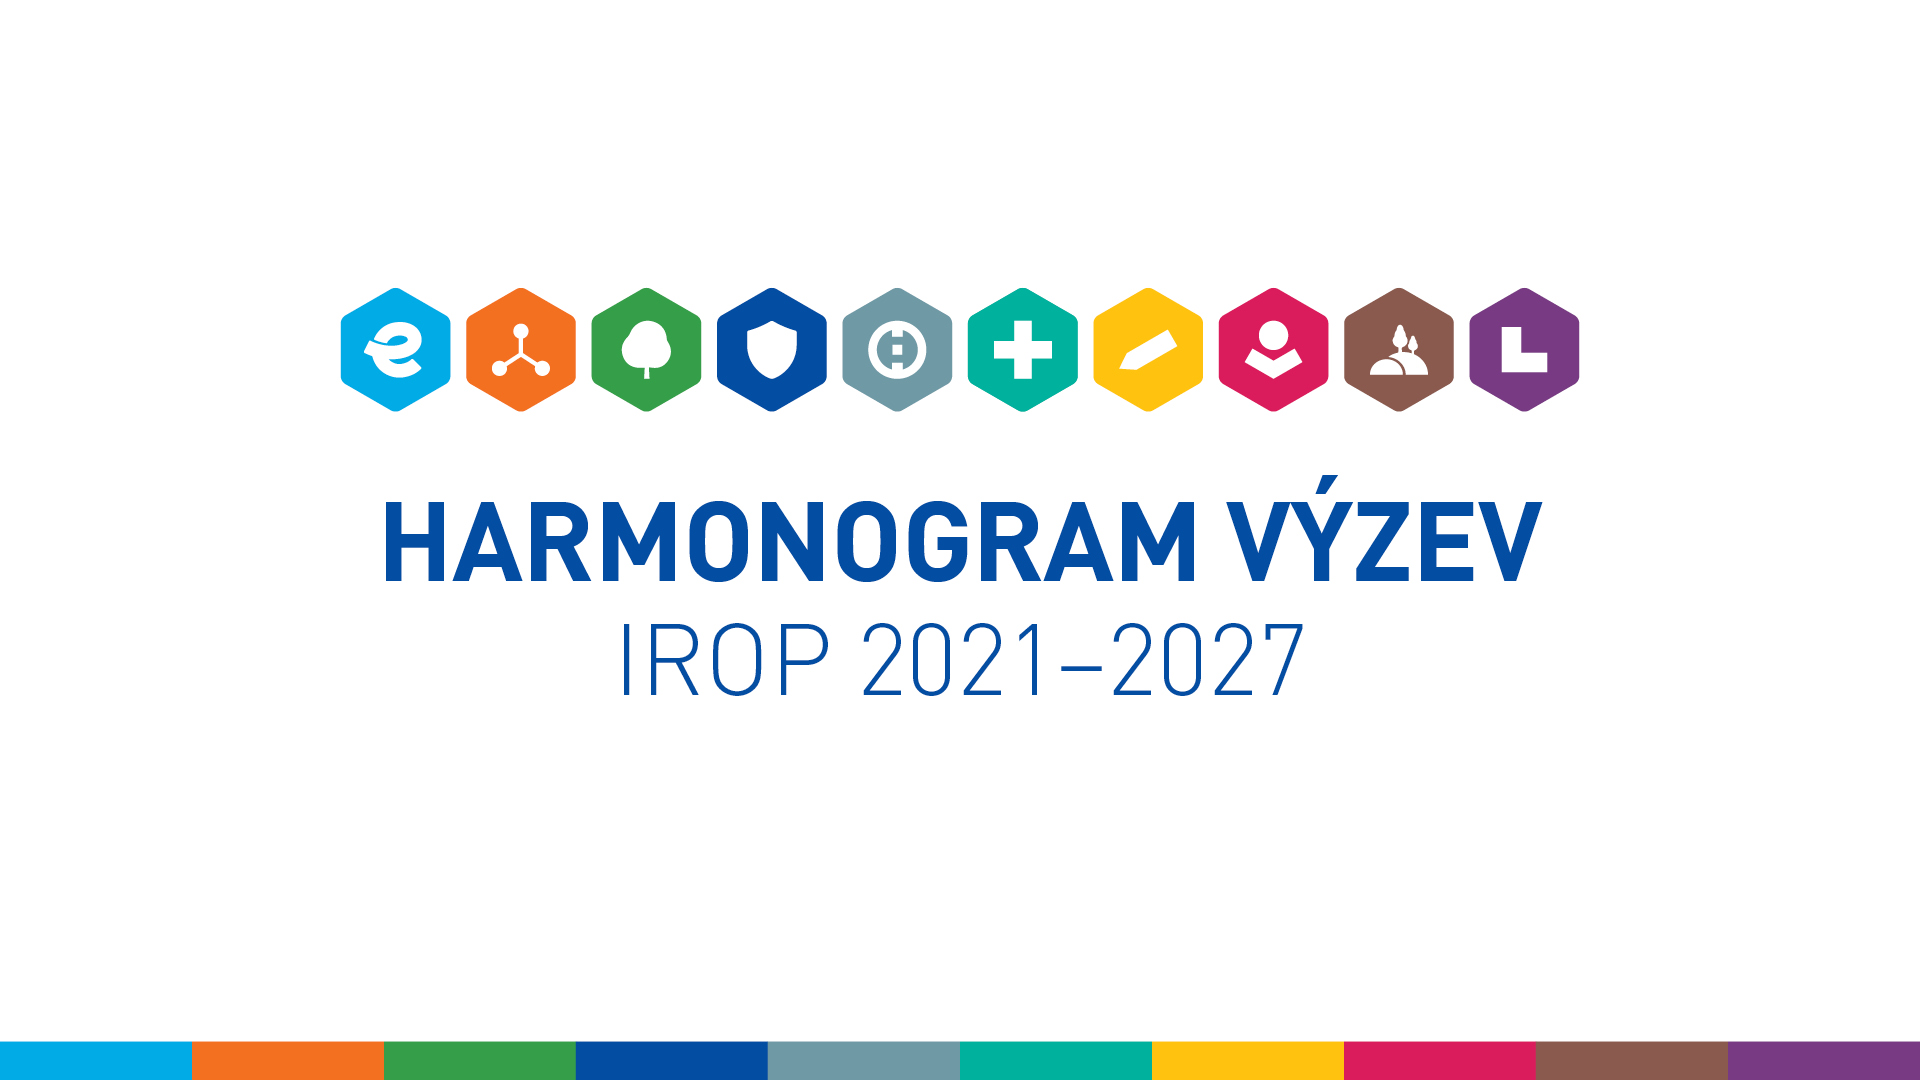 Schválení hodnotících kritérií a systému hodnocení projektů IROP a zveřejnění harmonogramu výzev IRO